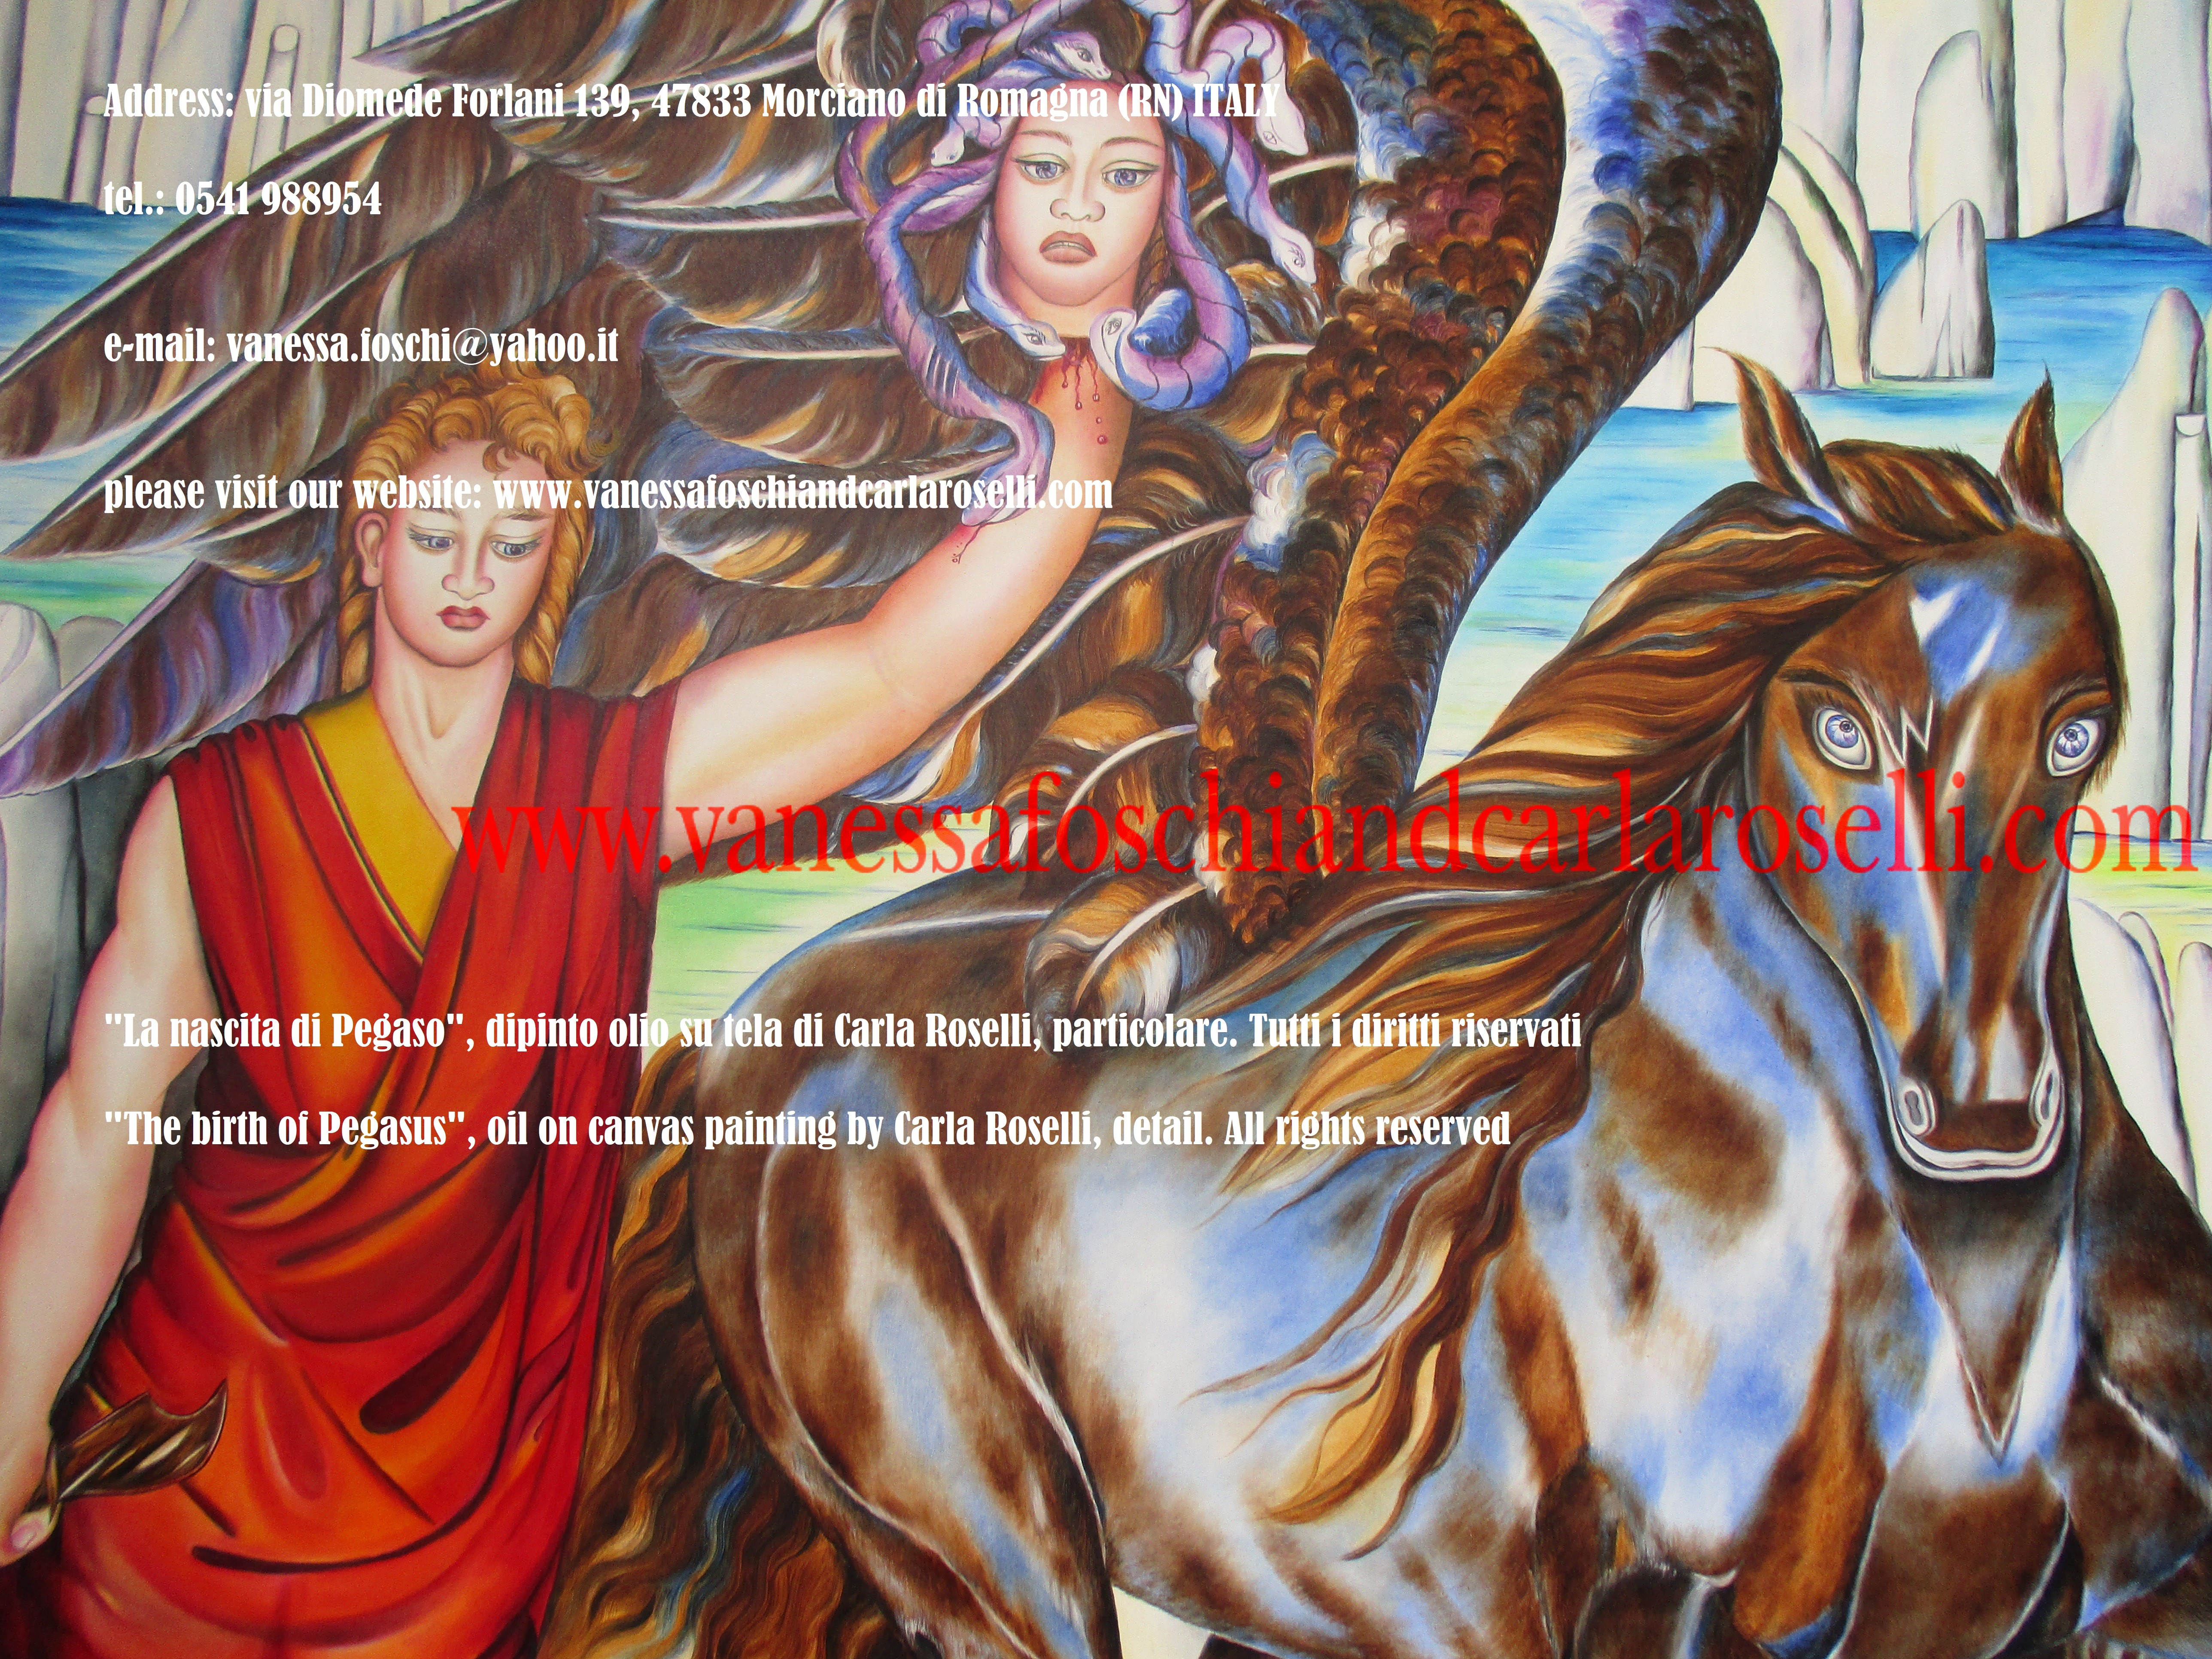 LA NASCITA DI PEGASUS Nel dipinto "La nascita di Pegasus" di Carla Roselli è raffigurata l'origine del divino destriero. Pegaso, il mitico cavallo alato, fu generato da Poseidone